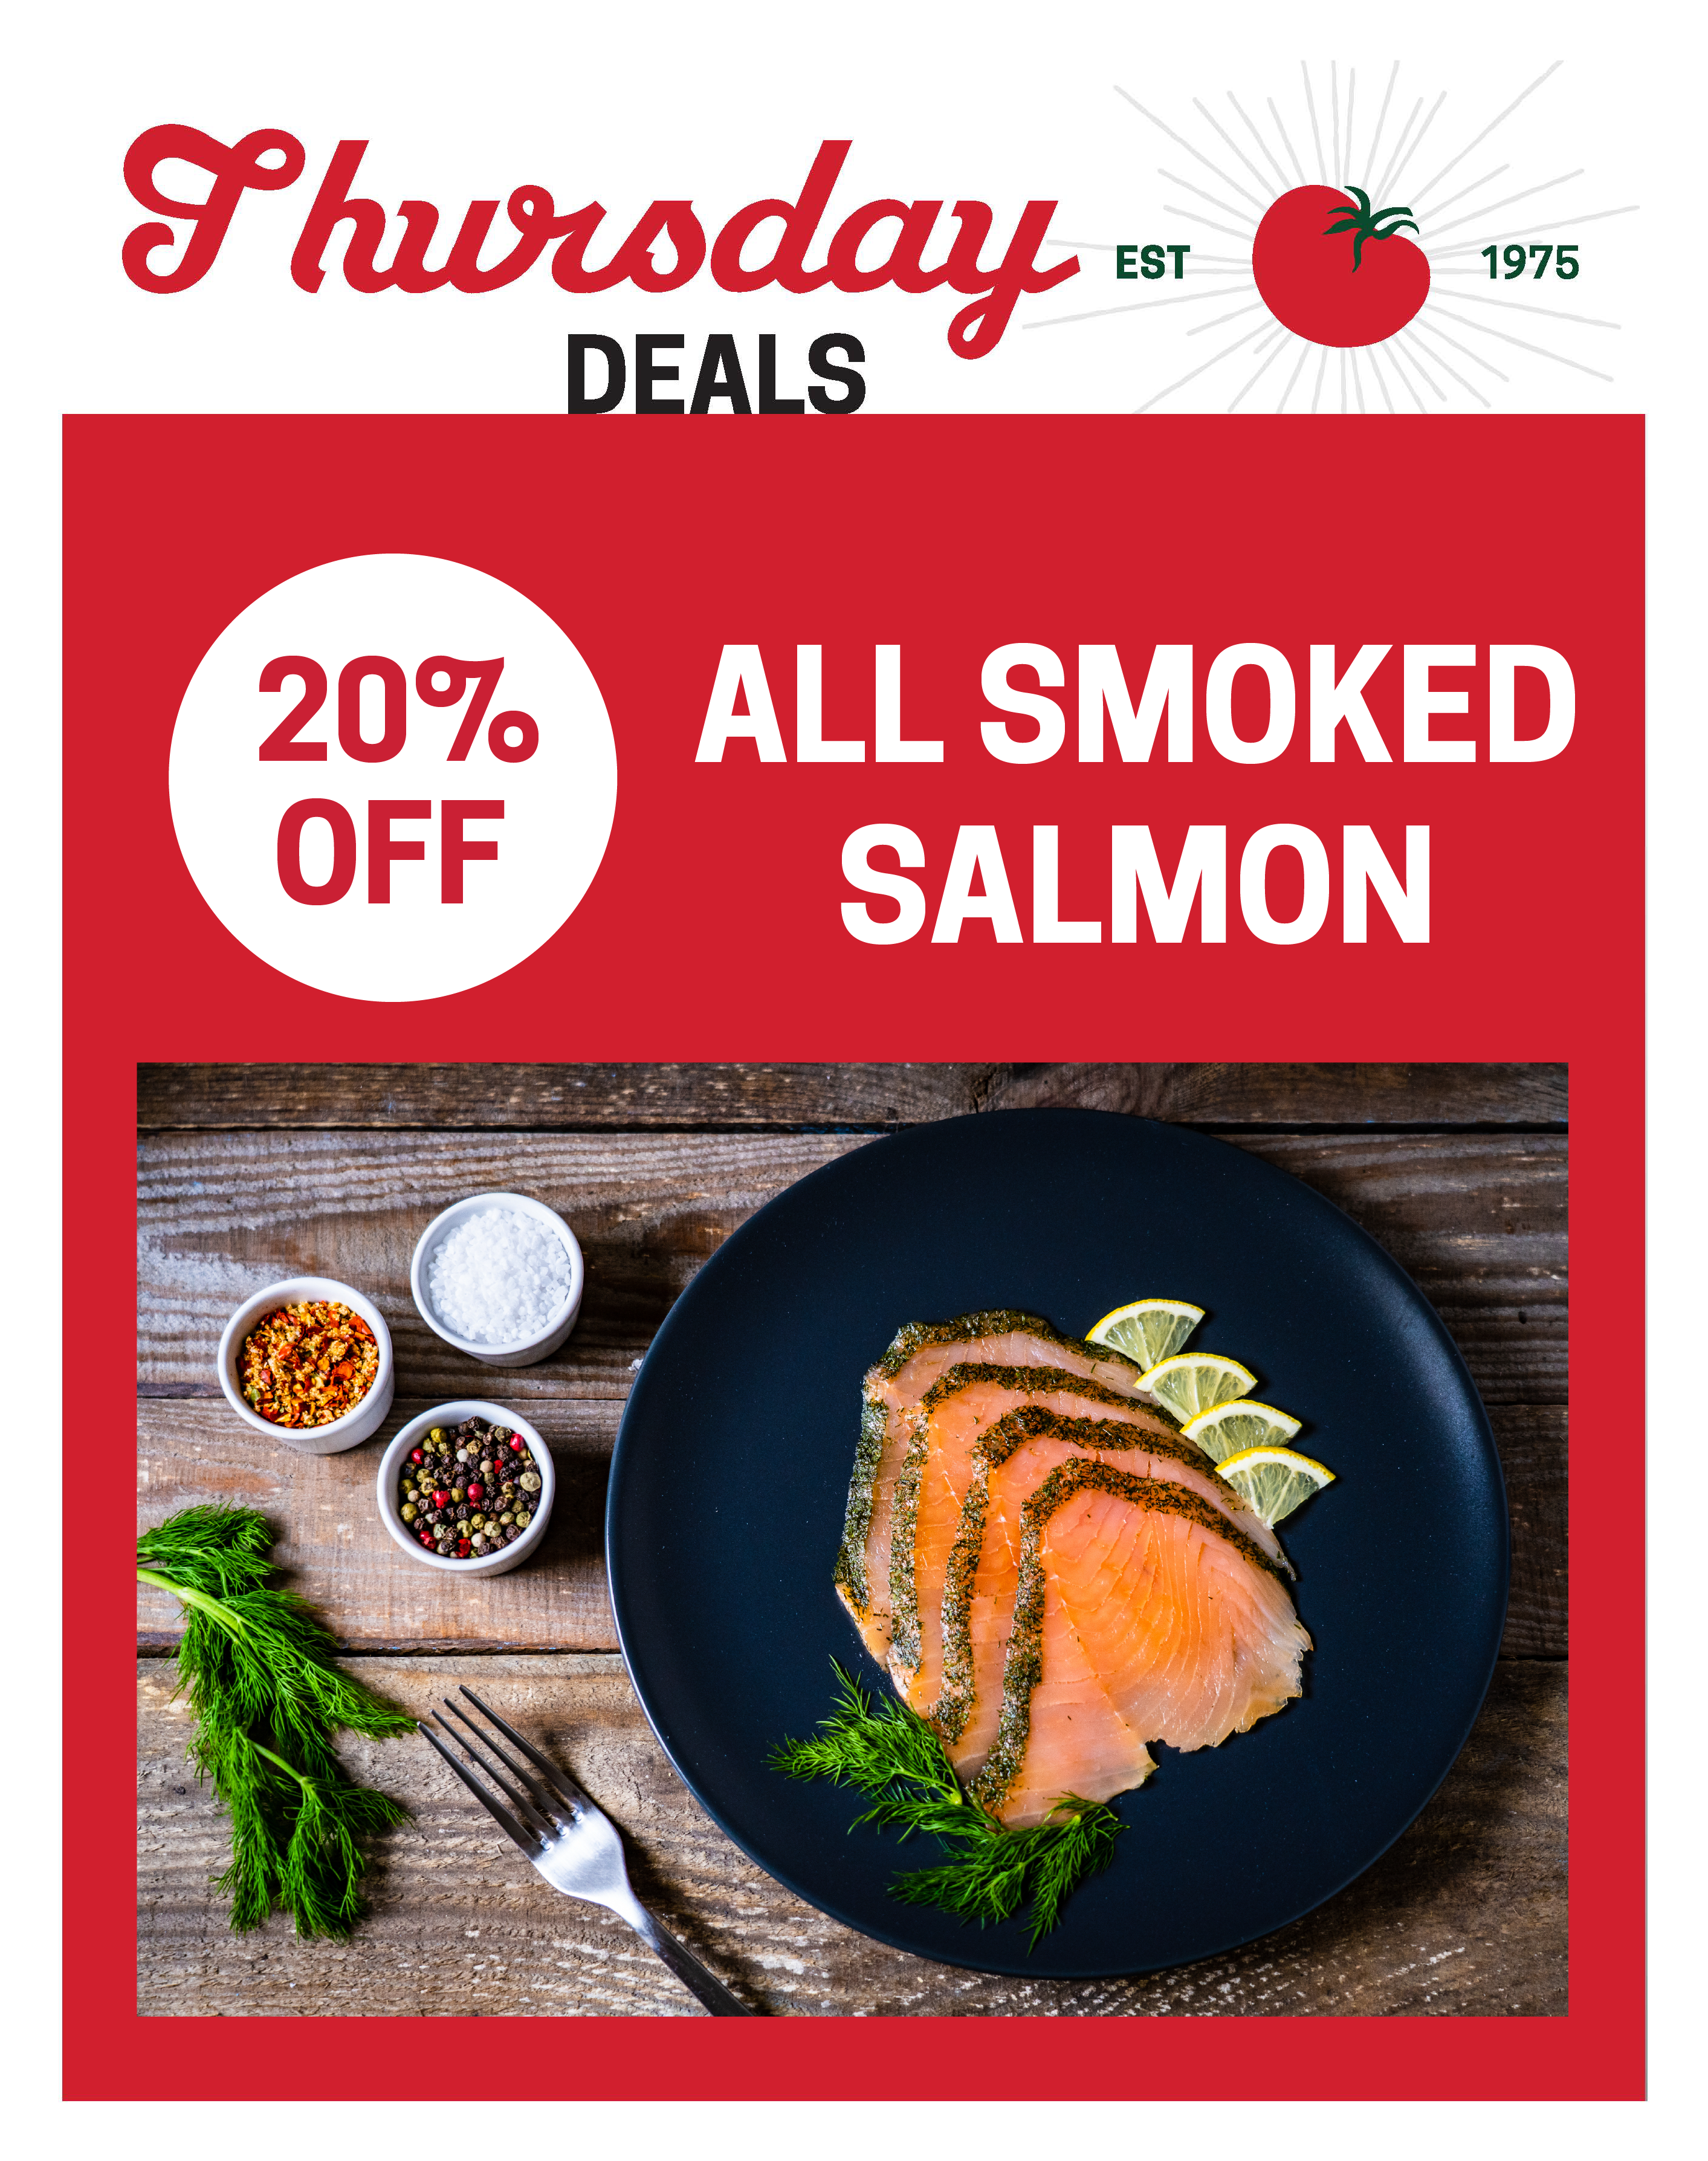 smoked-salmon-thursday-deals-01